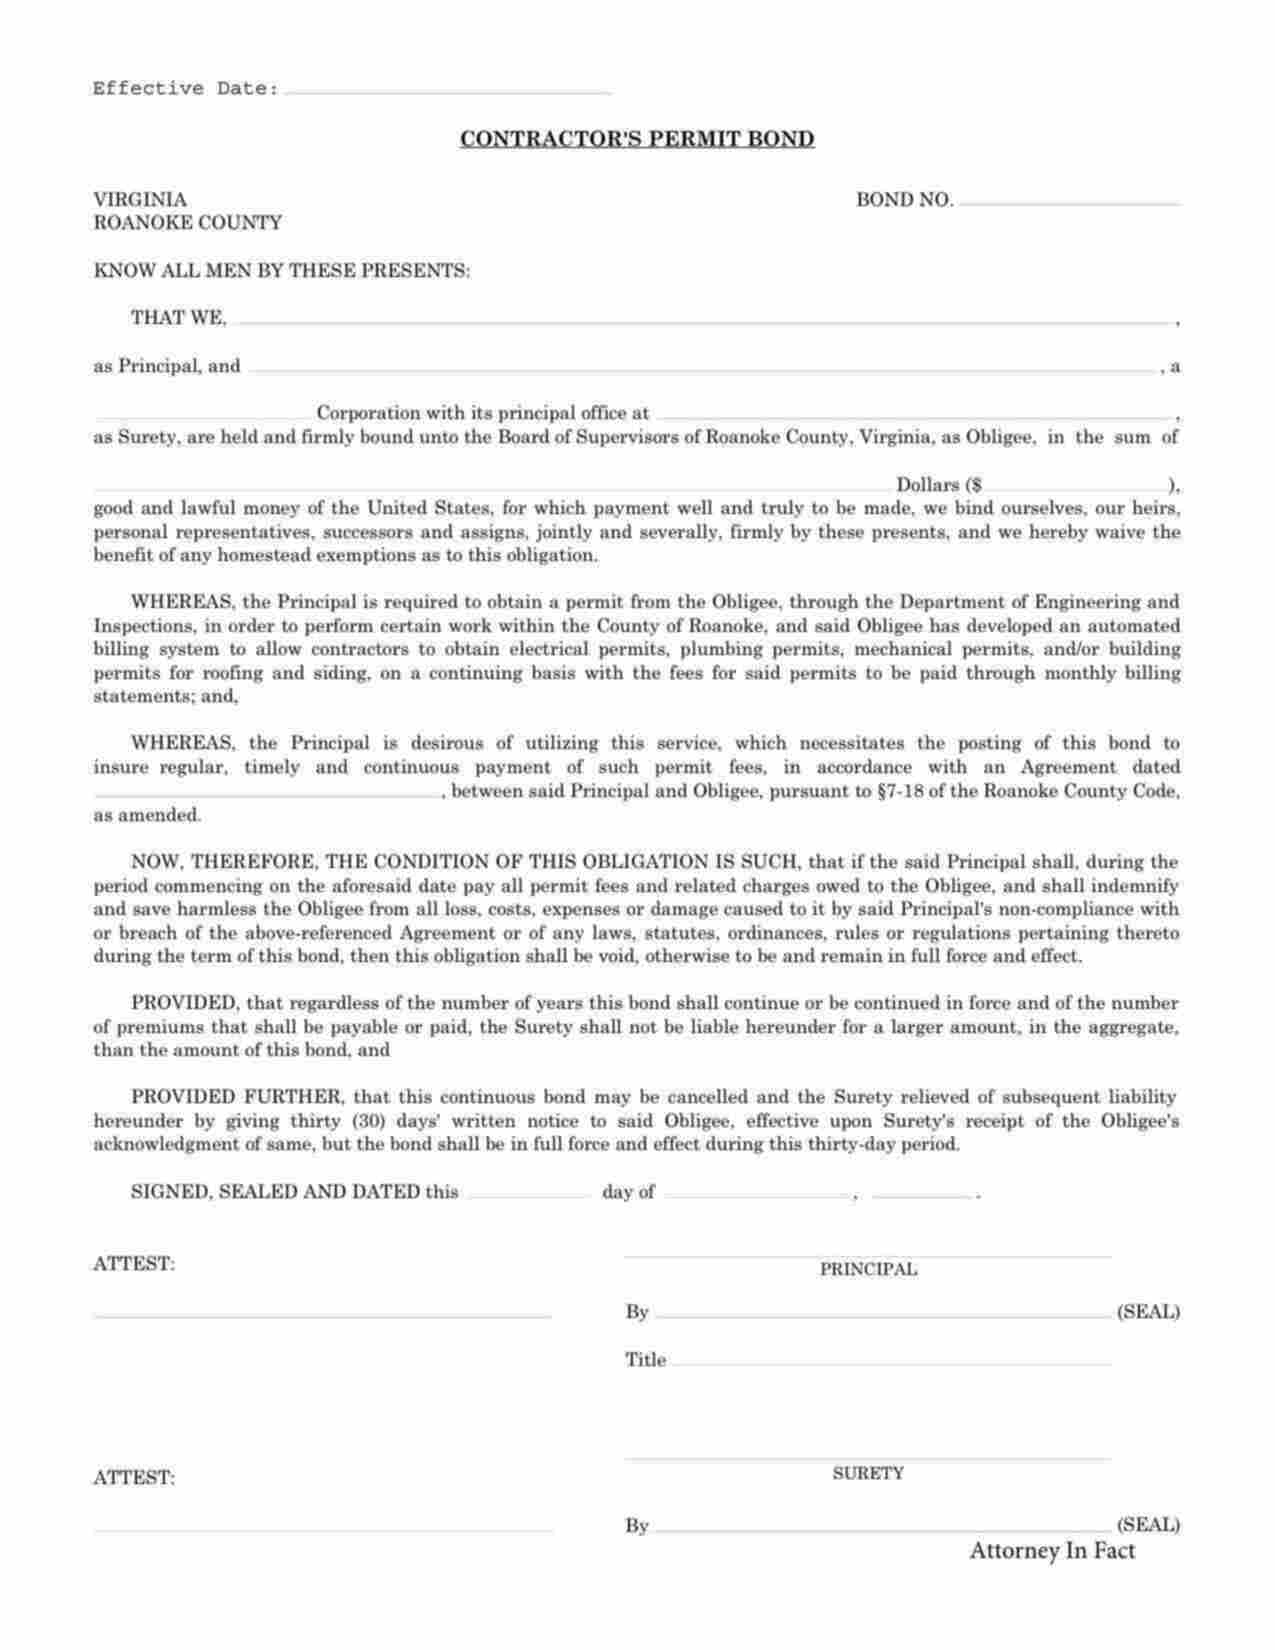 Virginia Contractor's Permit Bond Form